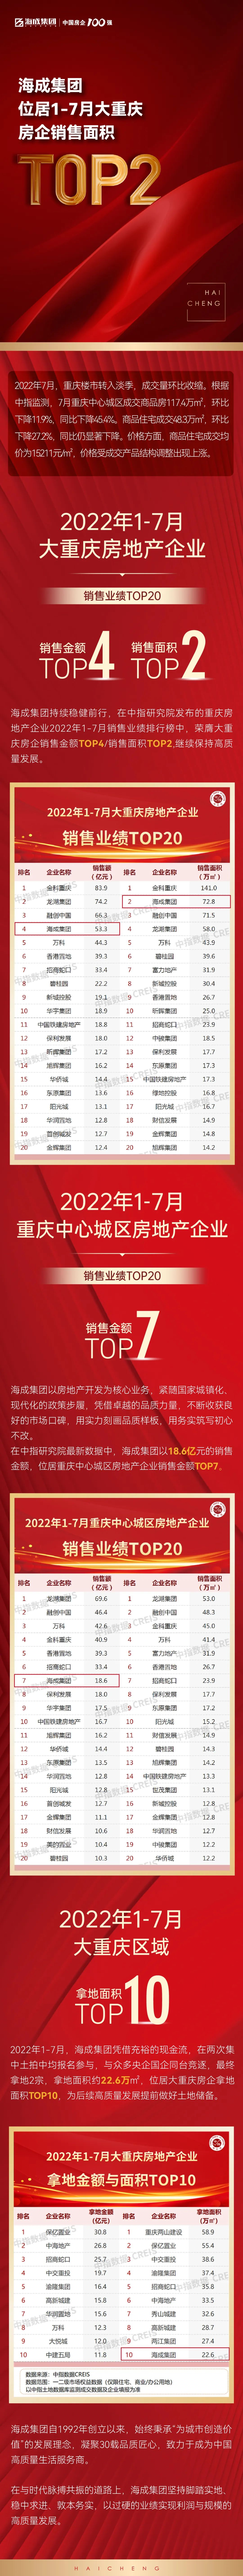 海成集团位居1-7月大重庆房企销售面积TOP2